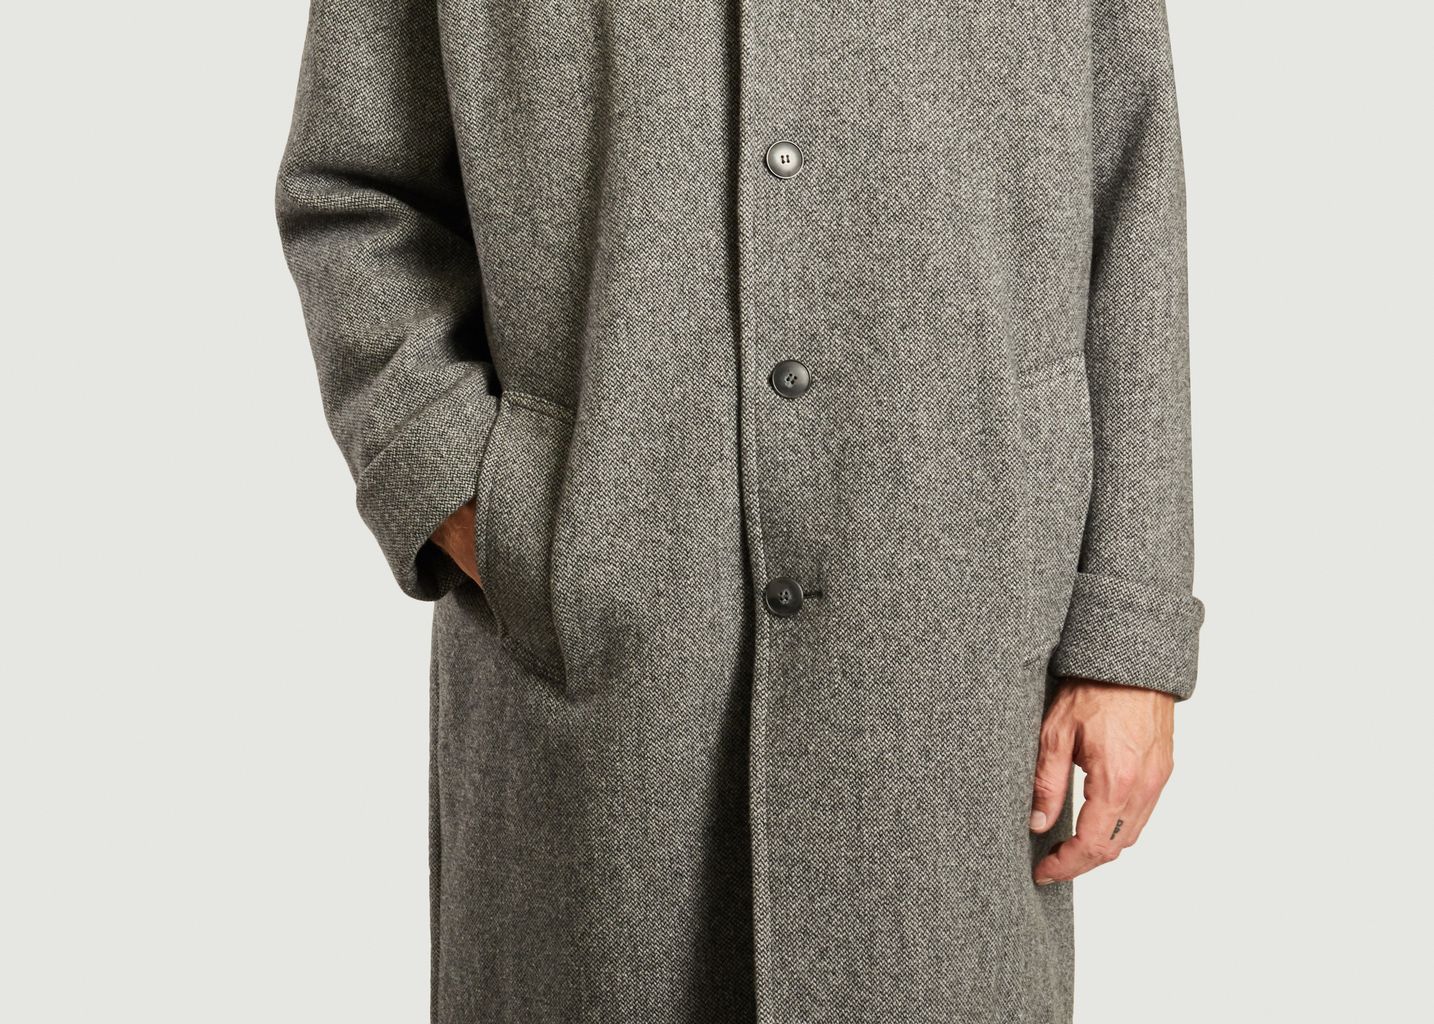 Reystone coat - American Vintage